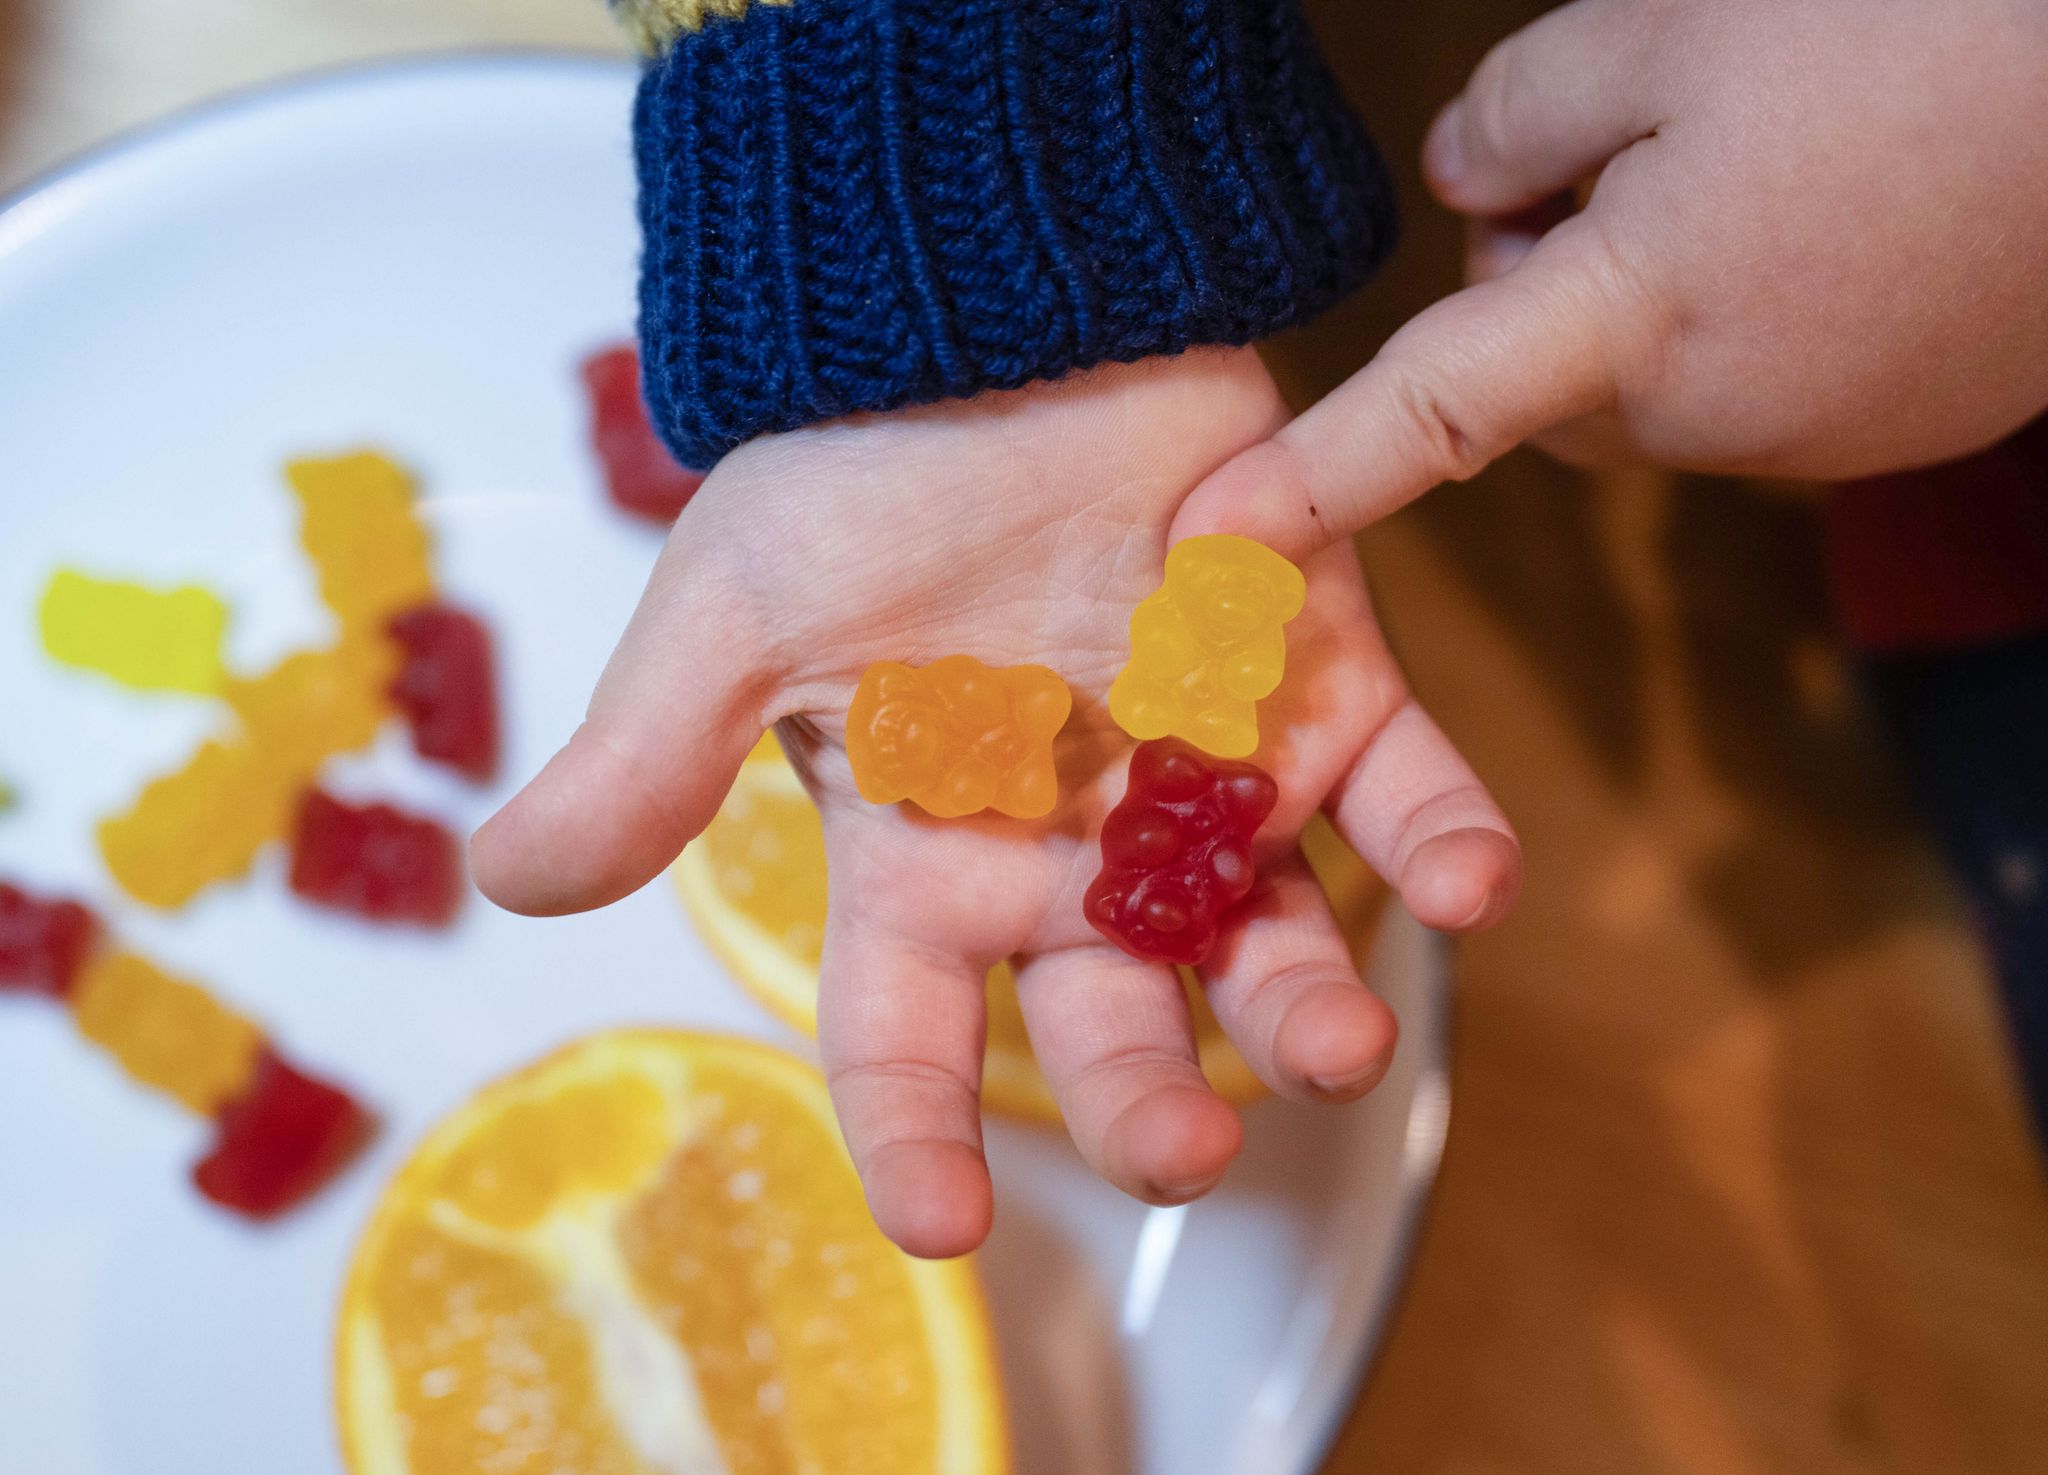 Kinder-Multivitaminpräparate haben bei einer ausgewogenen Ernährung keinen Mehrwert - und können sogar umstrittene Zusatzstoffe enthalten.